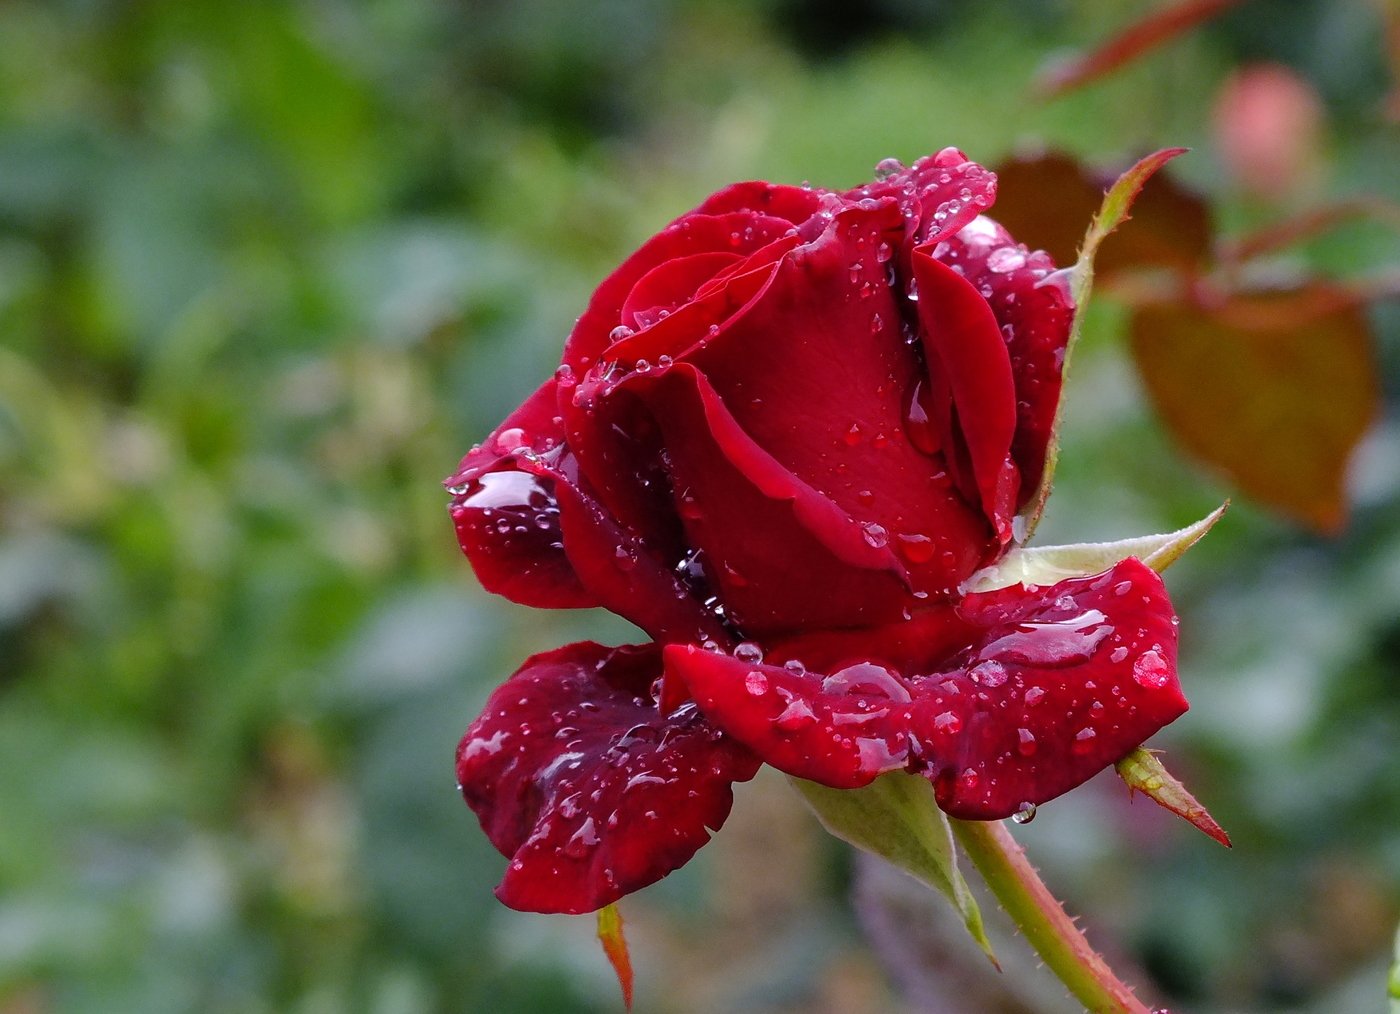 Красивые розы после дождя